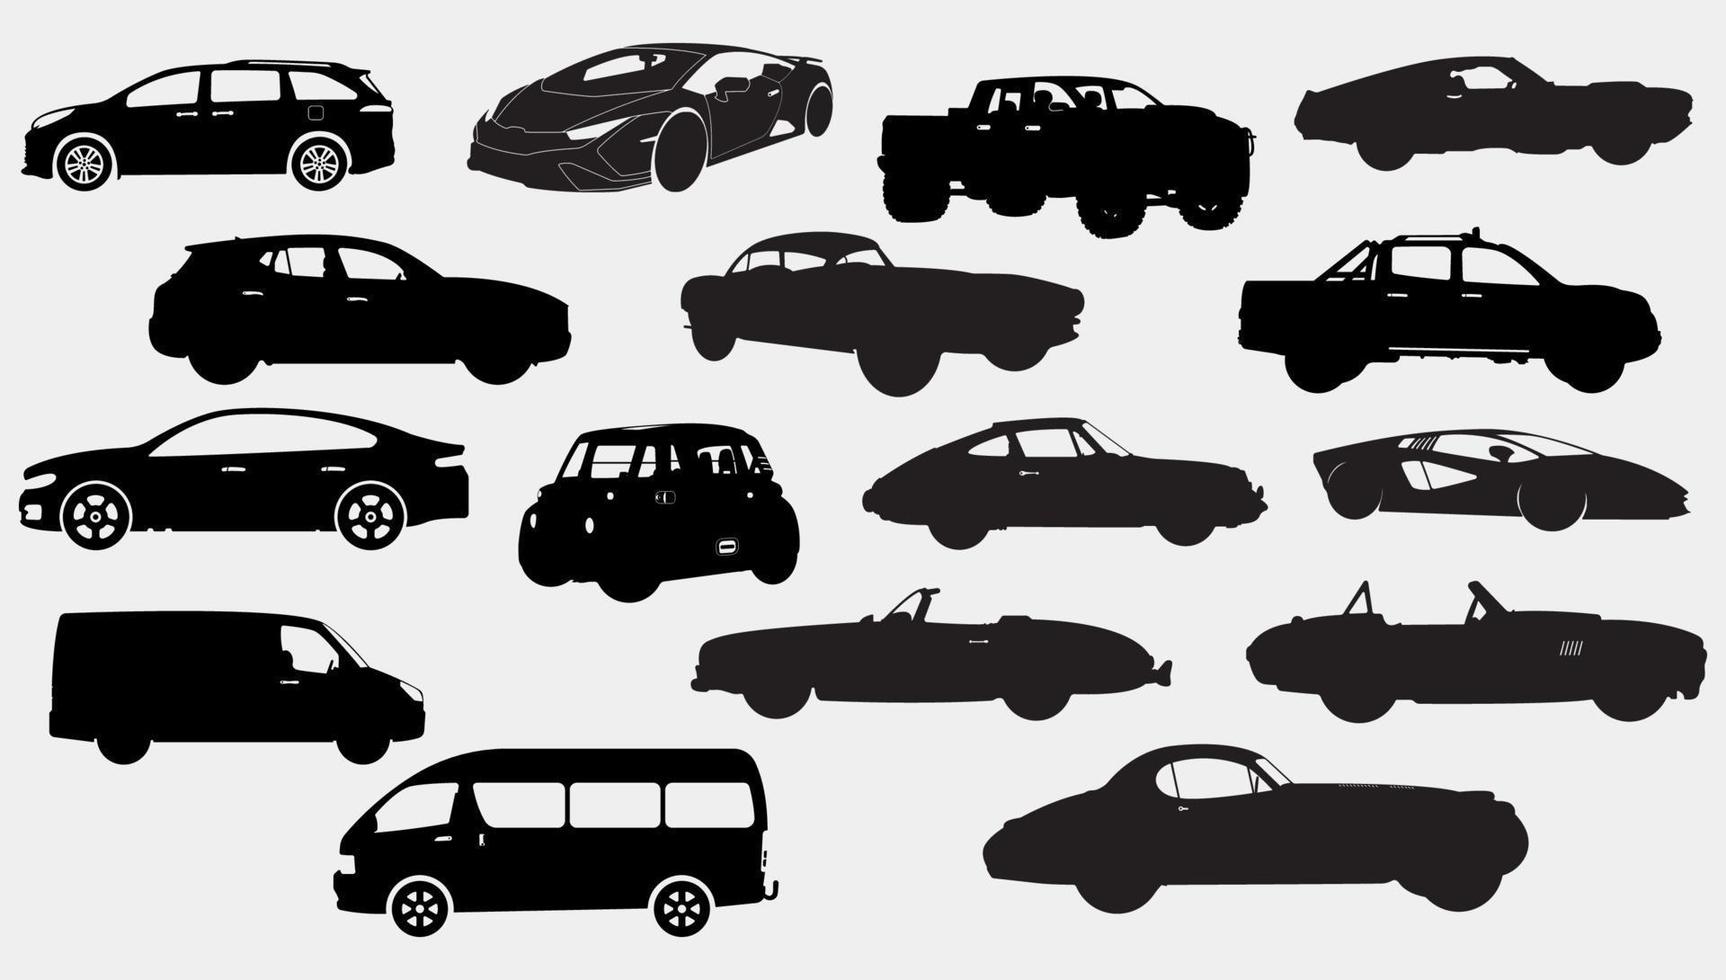 reeks van zestien auto's voertuigen silhouetten, klassiek, cabriolet, snel, mini bestelwagen, elektrisch, oppakken, economie zwart en wit voertuigen illustraties. vector